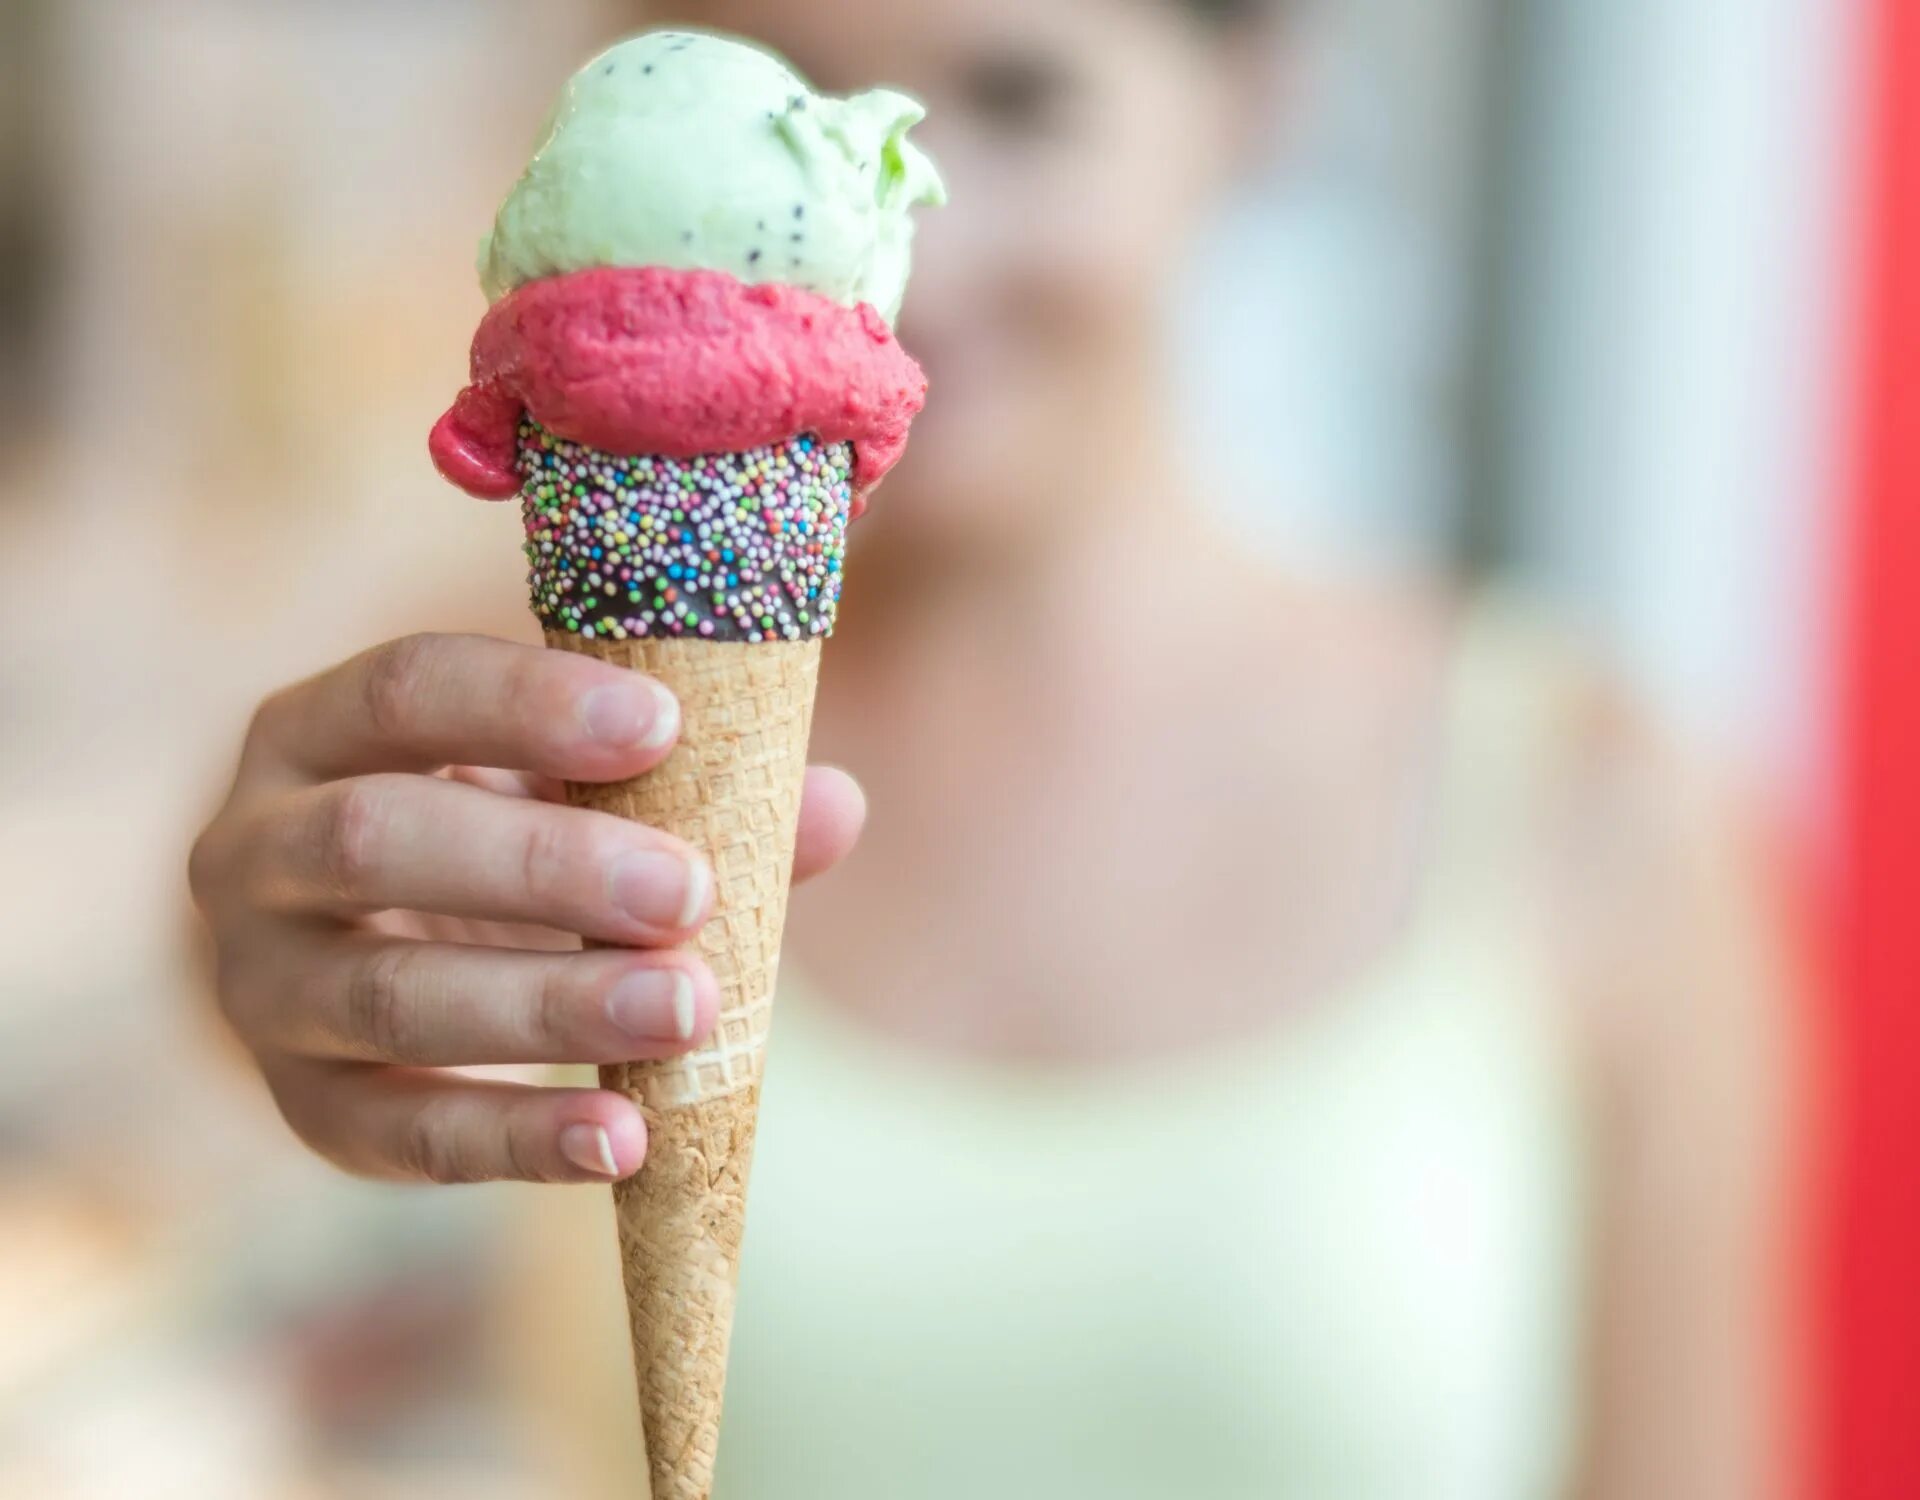 Включи видео мороженое. Мороженое рожок. Мягкое мороженое в рожке. Рожок мороженого в руке. Мороженое пломбир рожок.